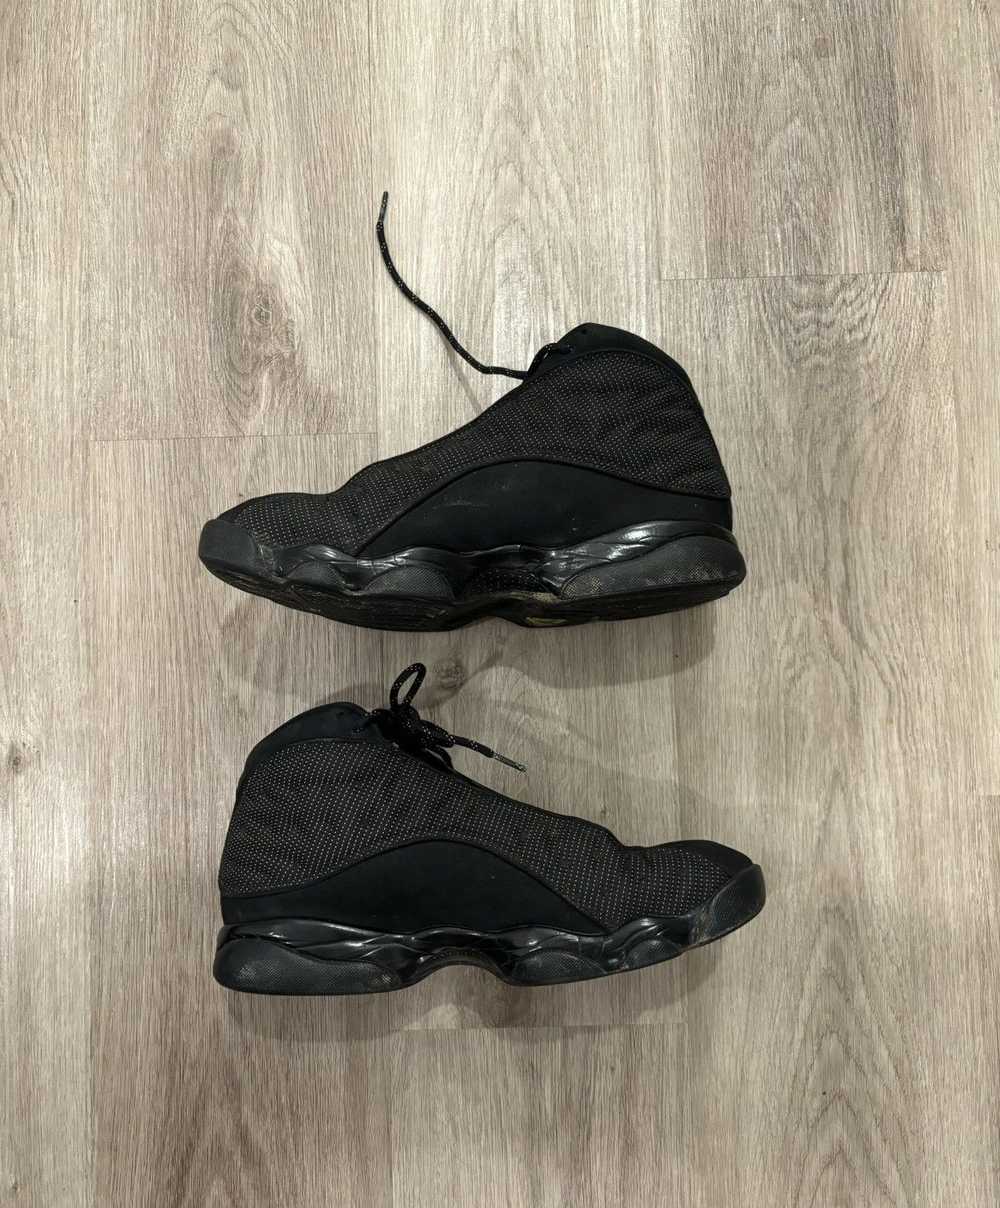 Jordan Brand × Nike Jordan 13 black cat - image 2